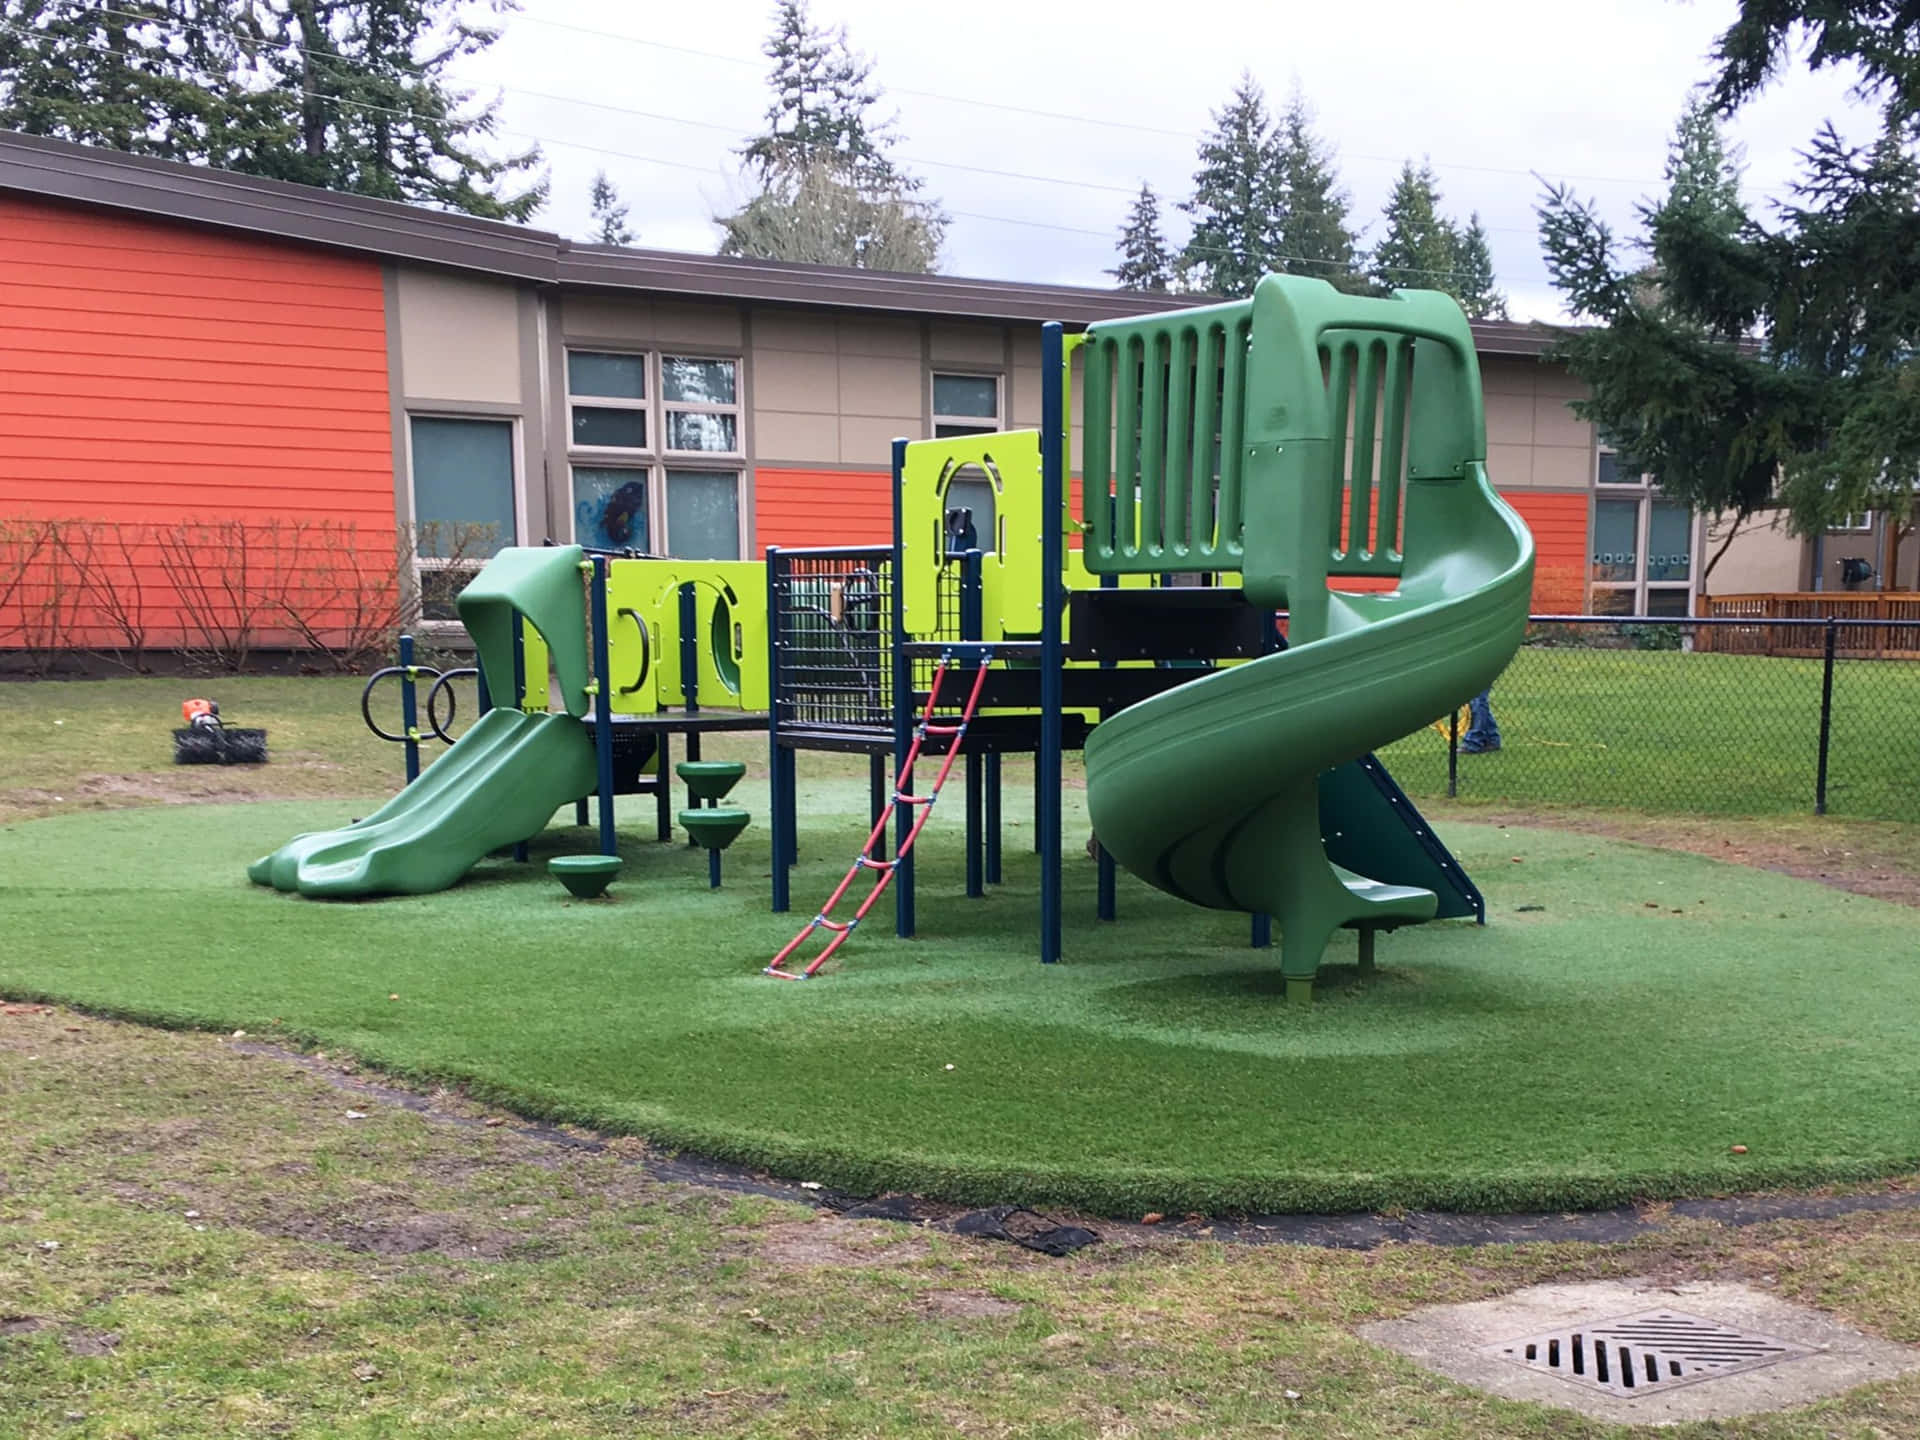 Niñosdisfrutando Del Tiempo De Juego En Un Parque Colorido